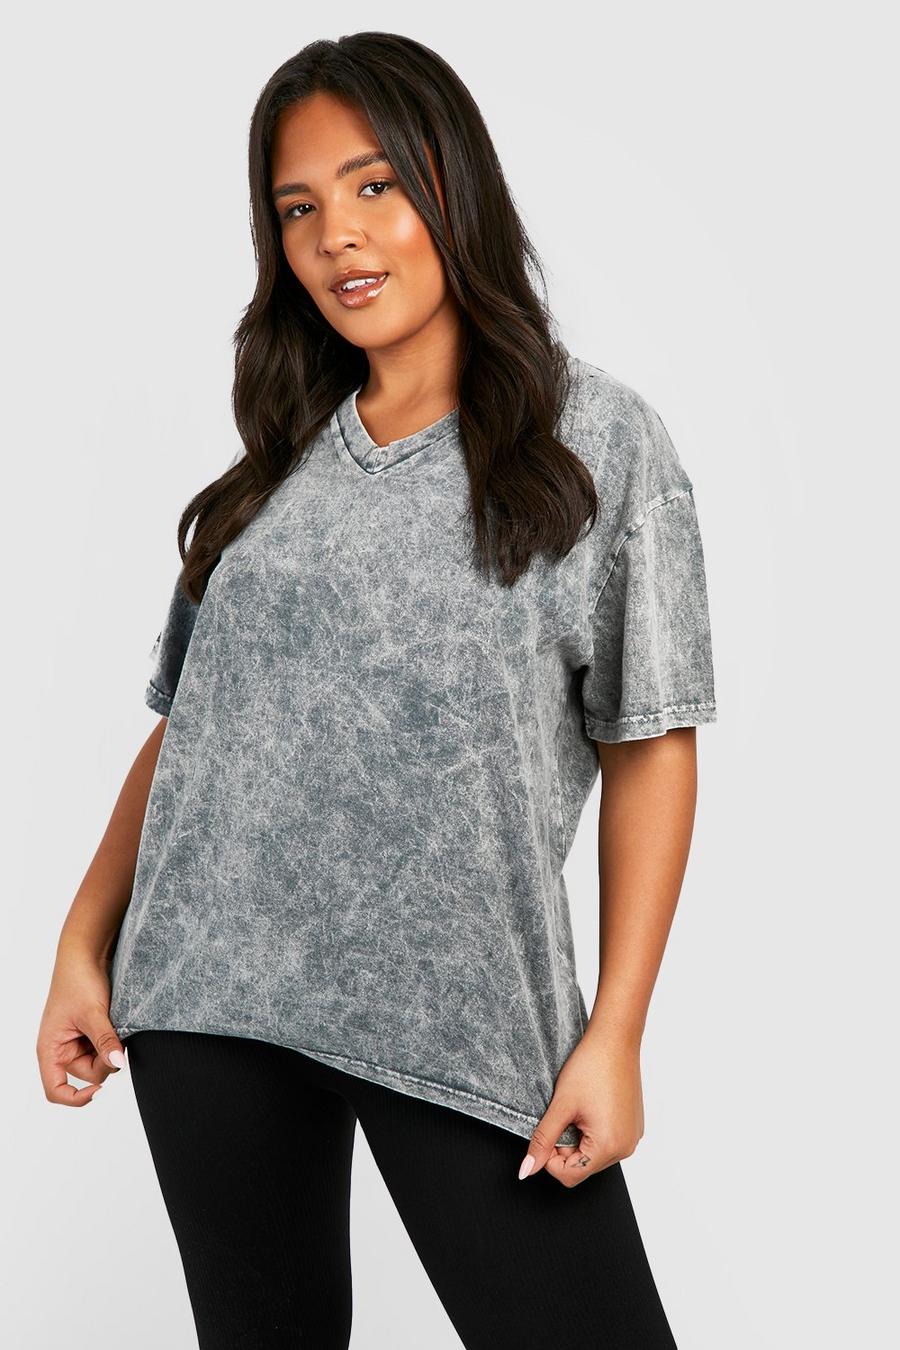 Charcoal gris Plus Acid Wash Deep V Basic Cotton T-shirt   